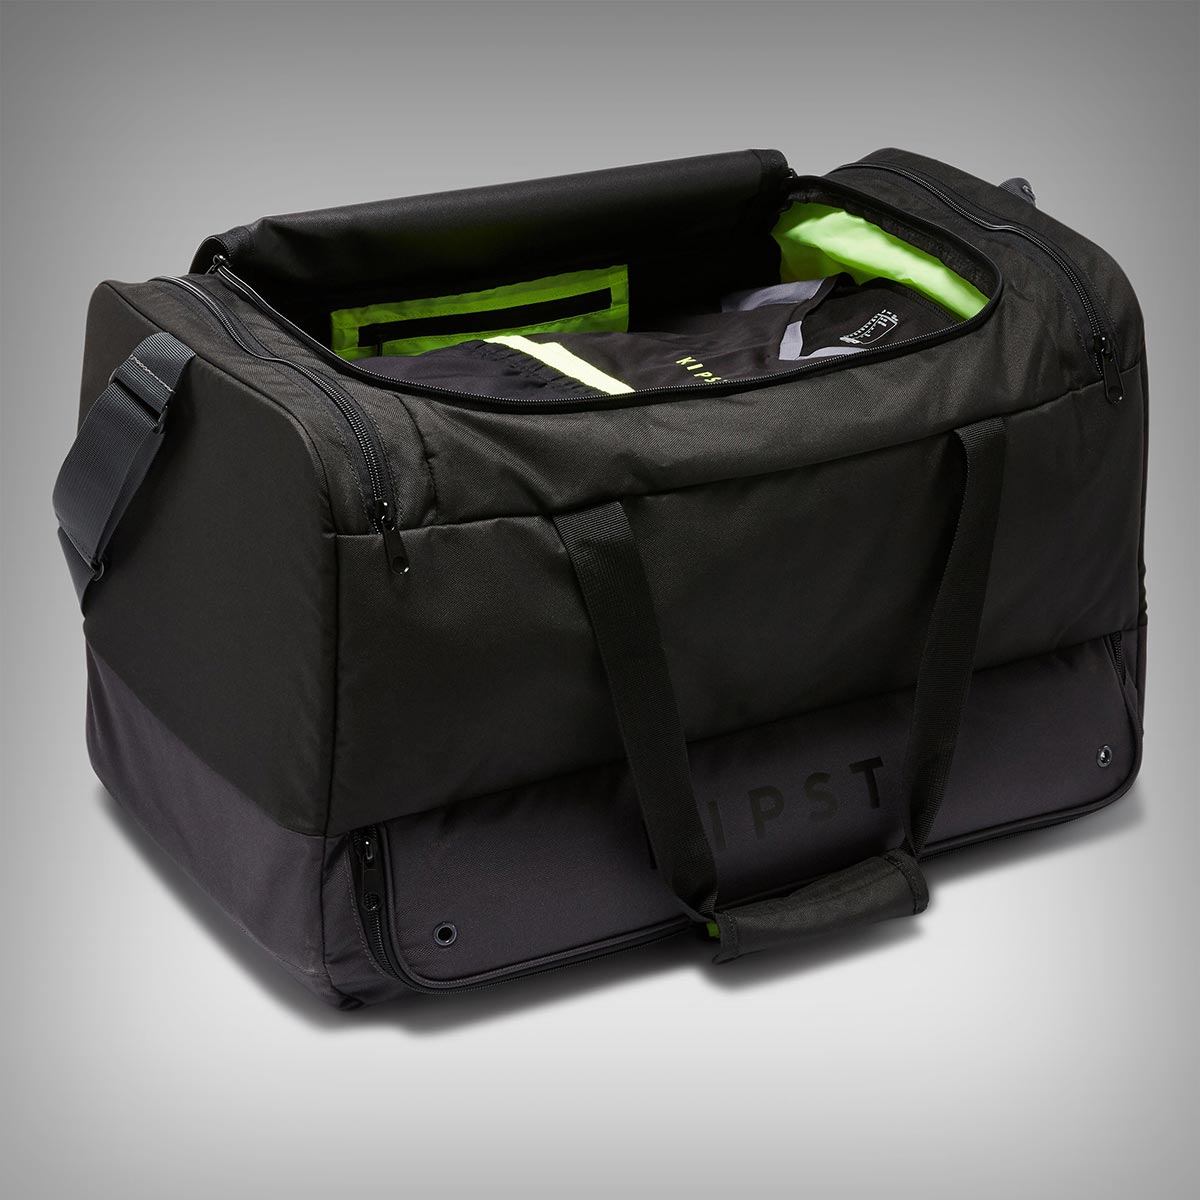 Kipsta Hardcase 75L, una mochila de 30 euros perfecta para llevar toda la equipación ciclista, incluyendo zapatillas